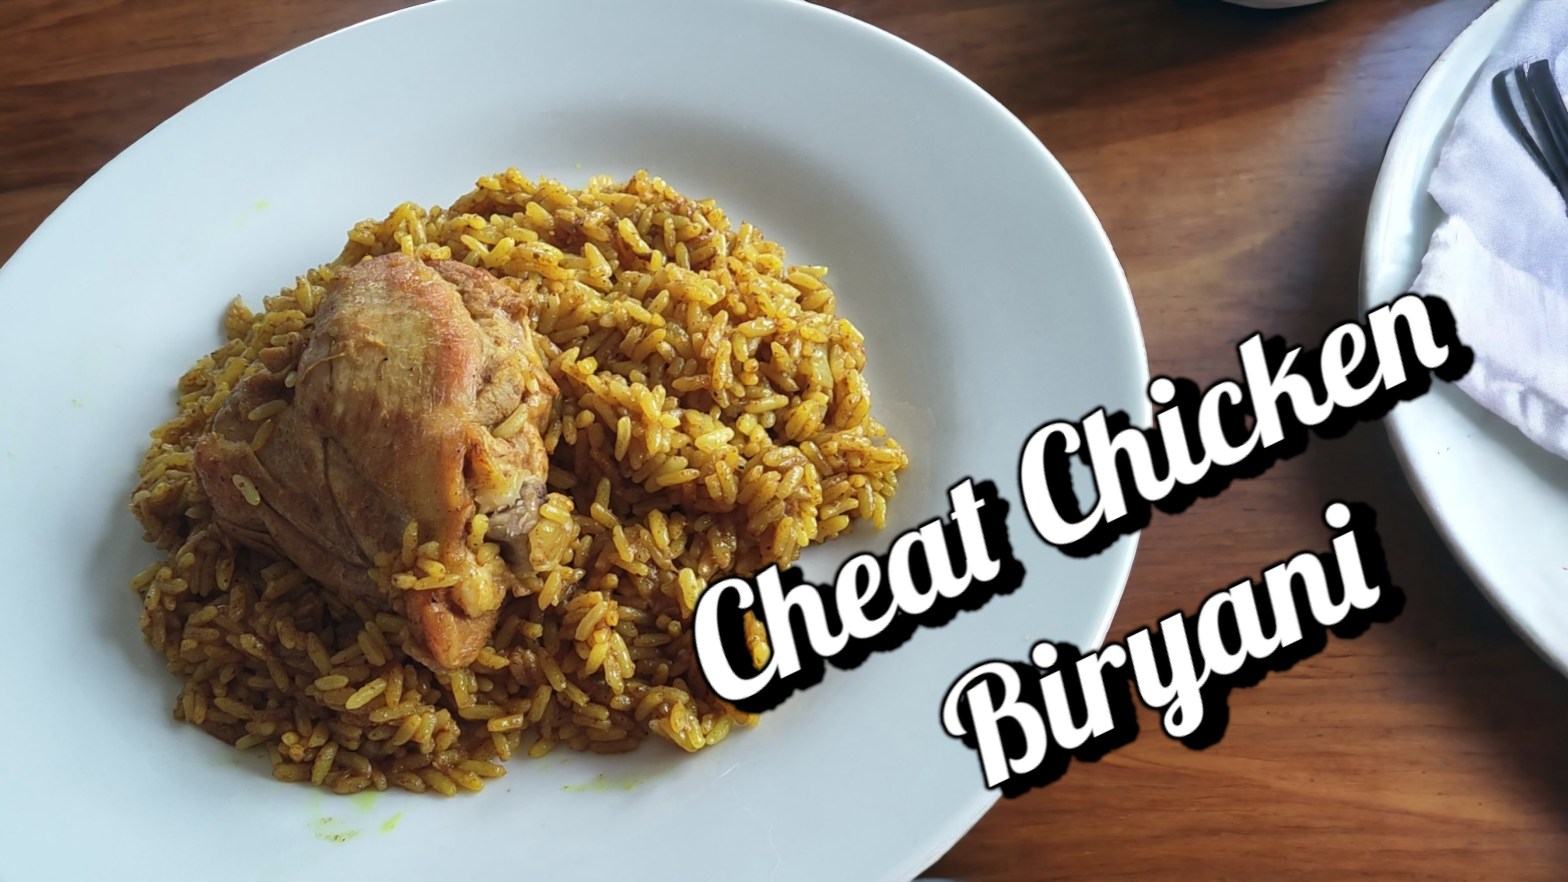 How to Make Cheat Chicken Biryani Instant Pot